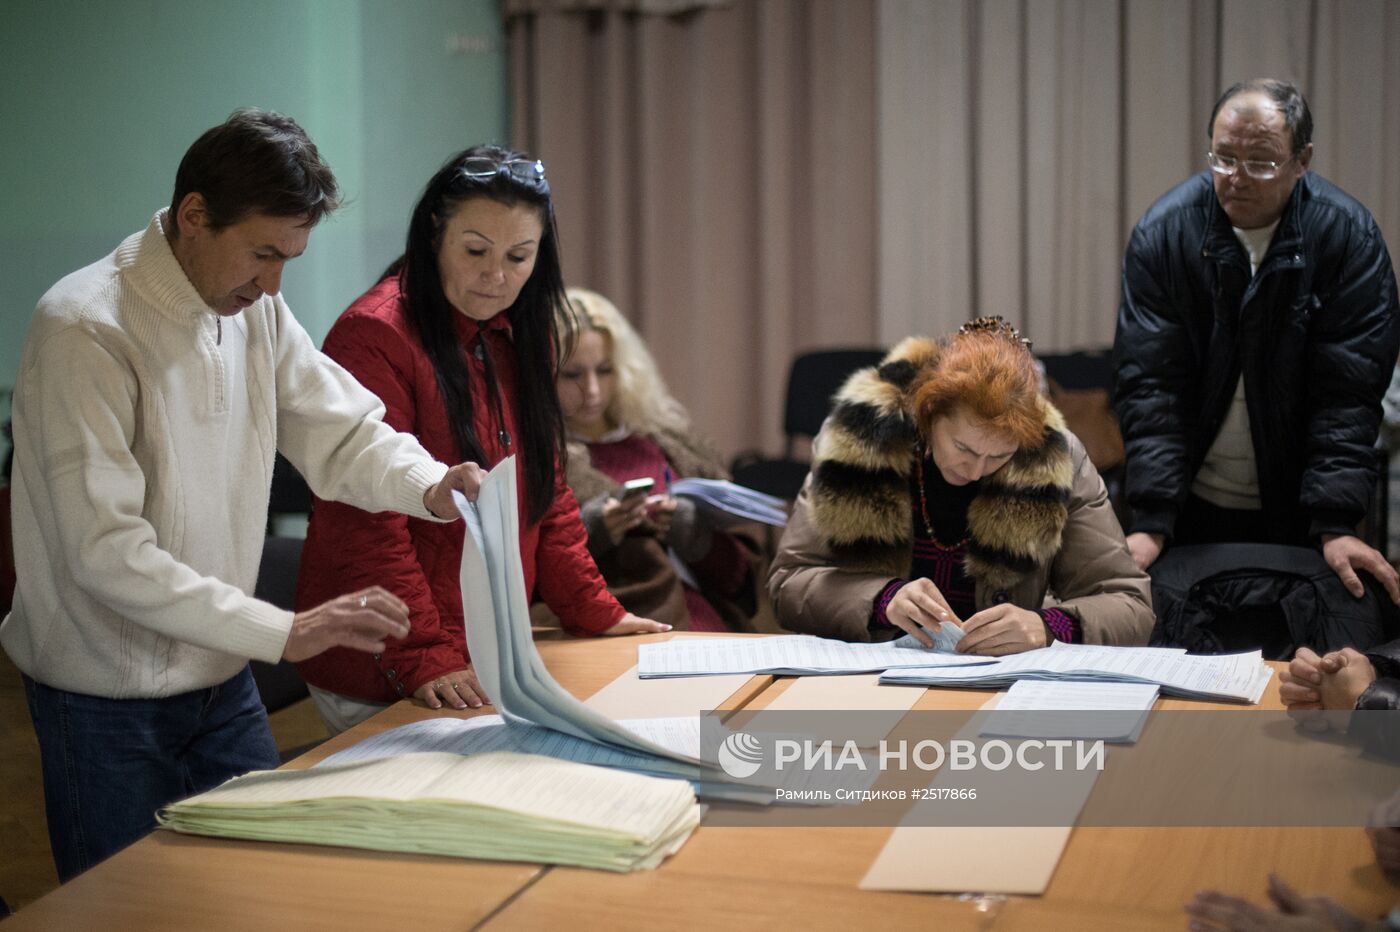 Подсчет голосов по результатам выборов в Верховную раду Украины